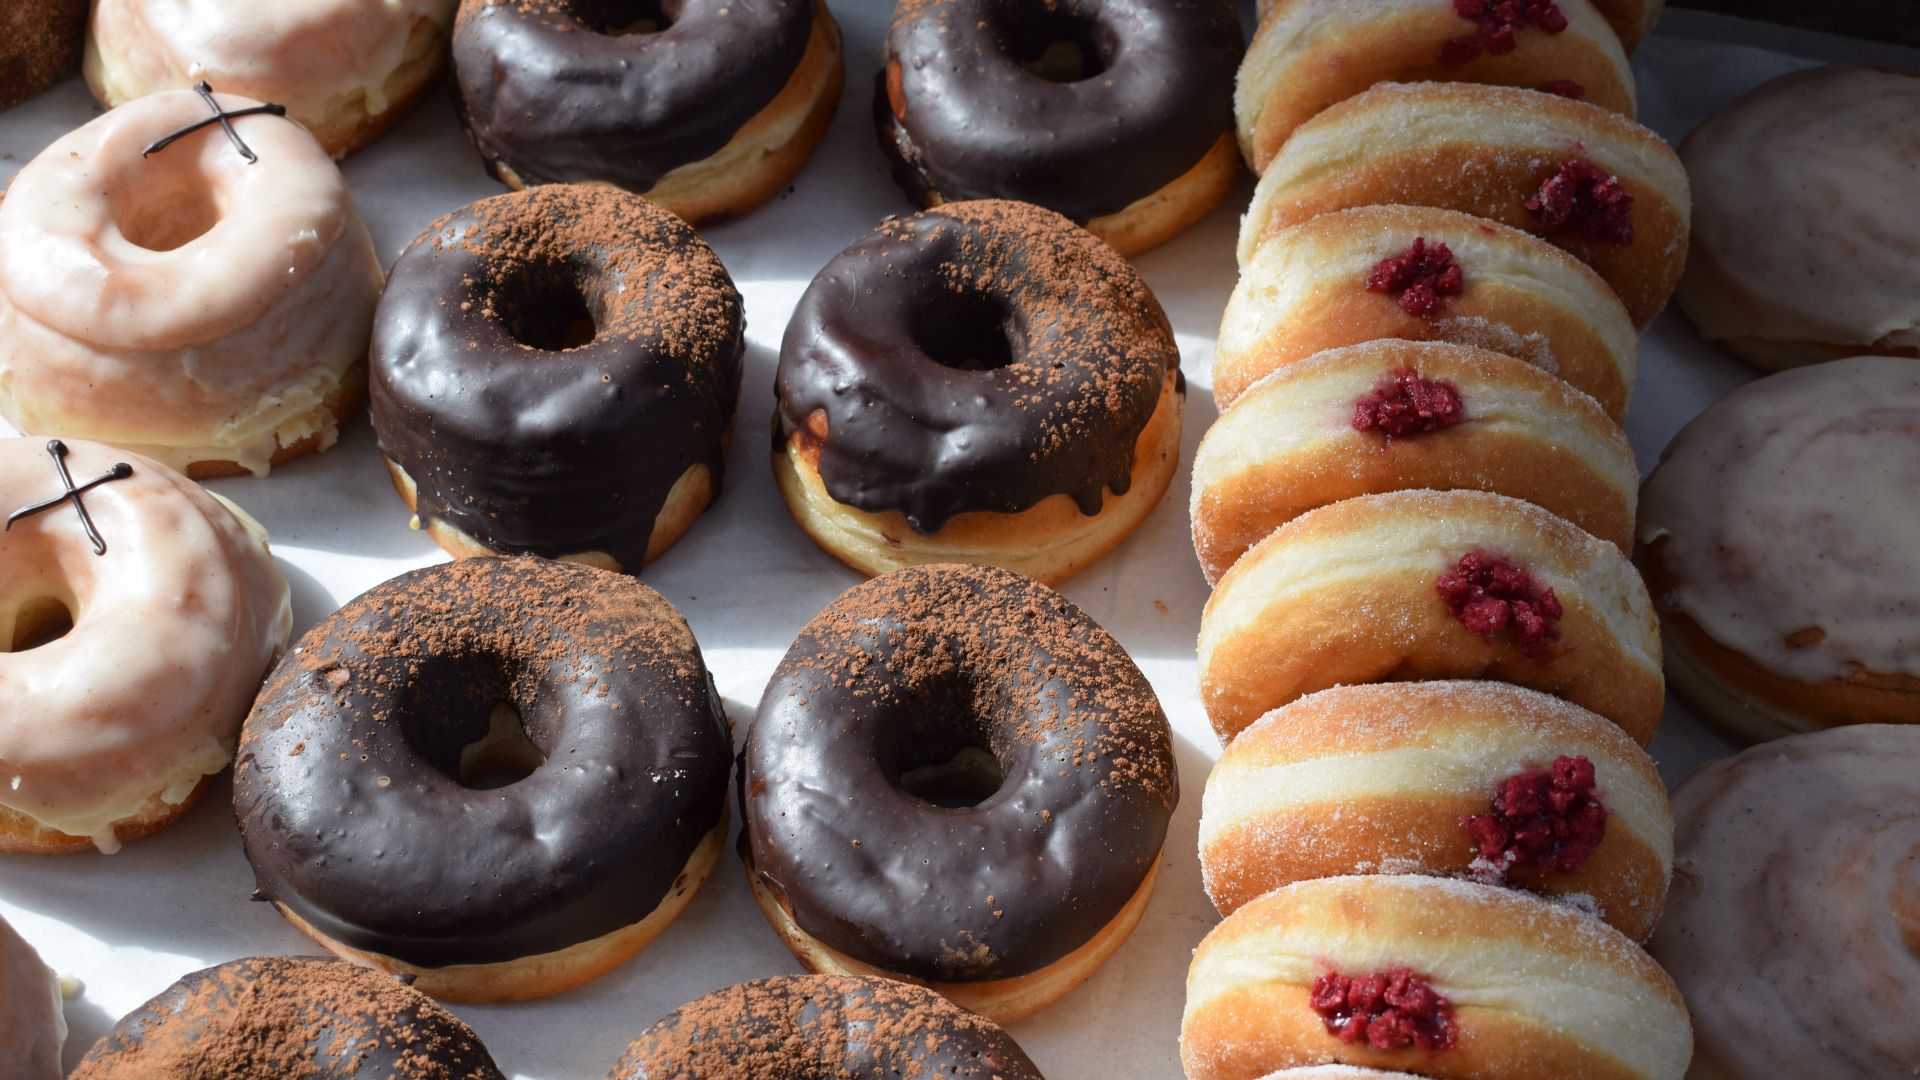 De beste olie om donuts in te bakken - 2 ultieme opties!